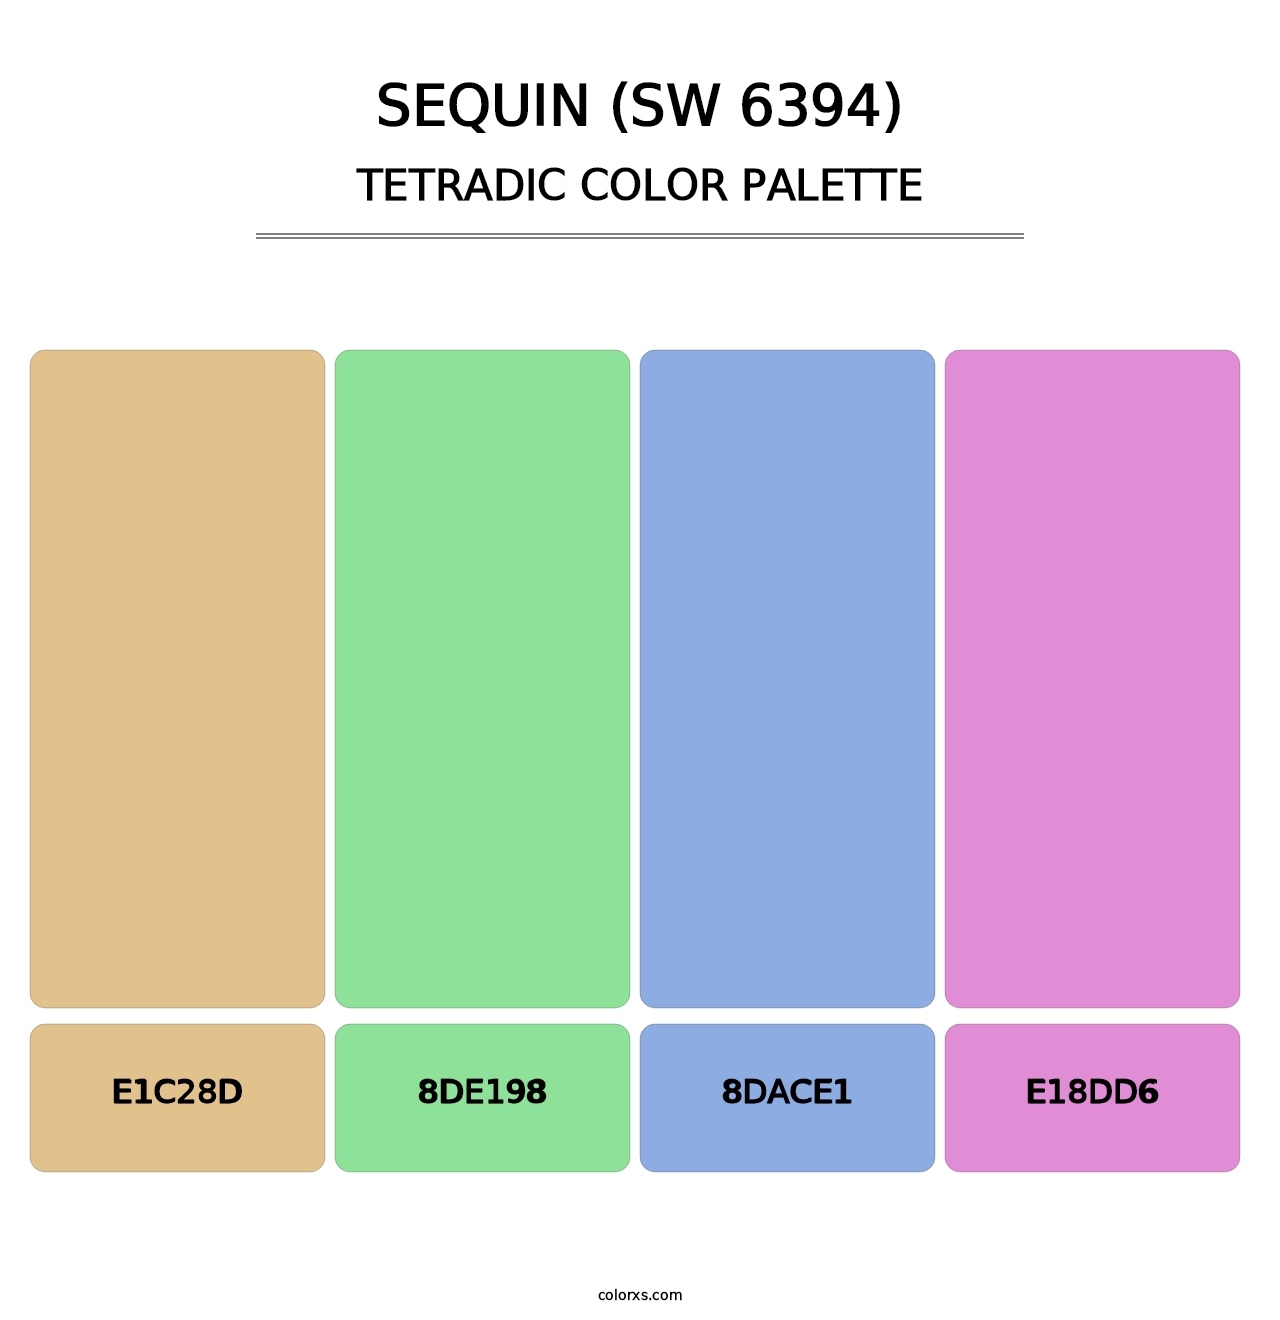 Sequin (SW 6394) - Tetradic Color Palette